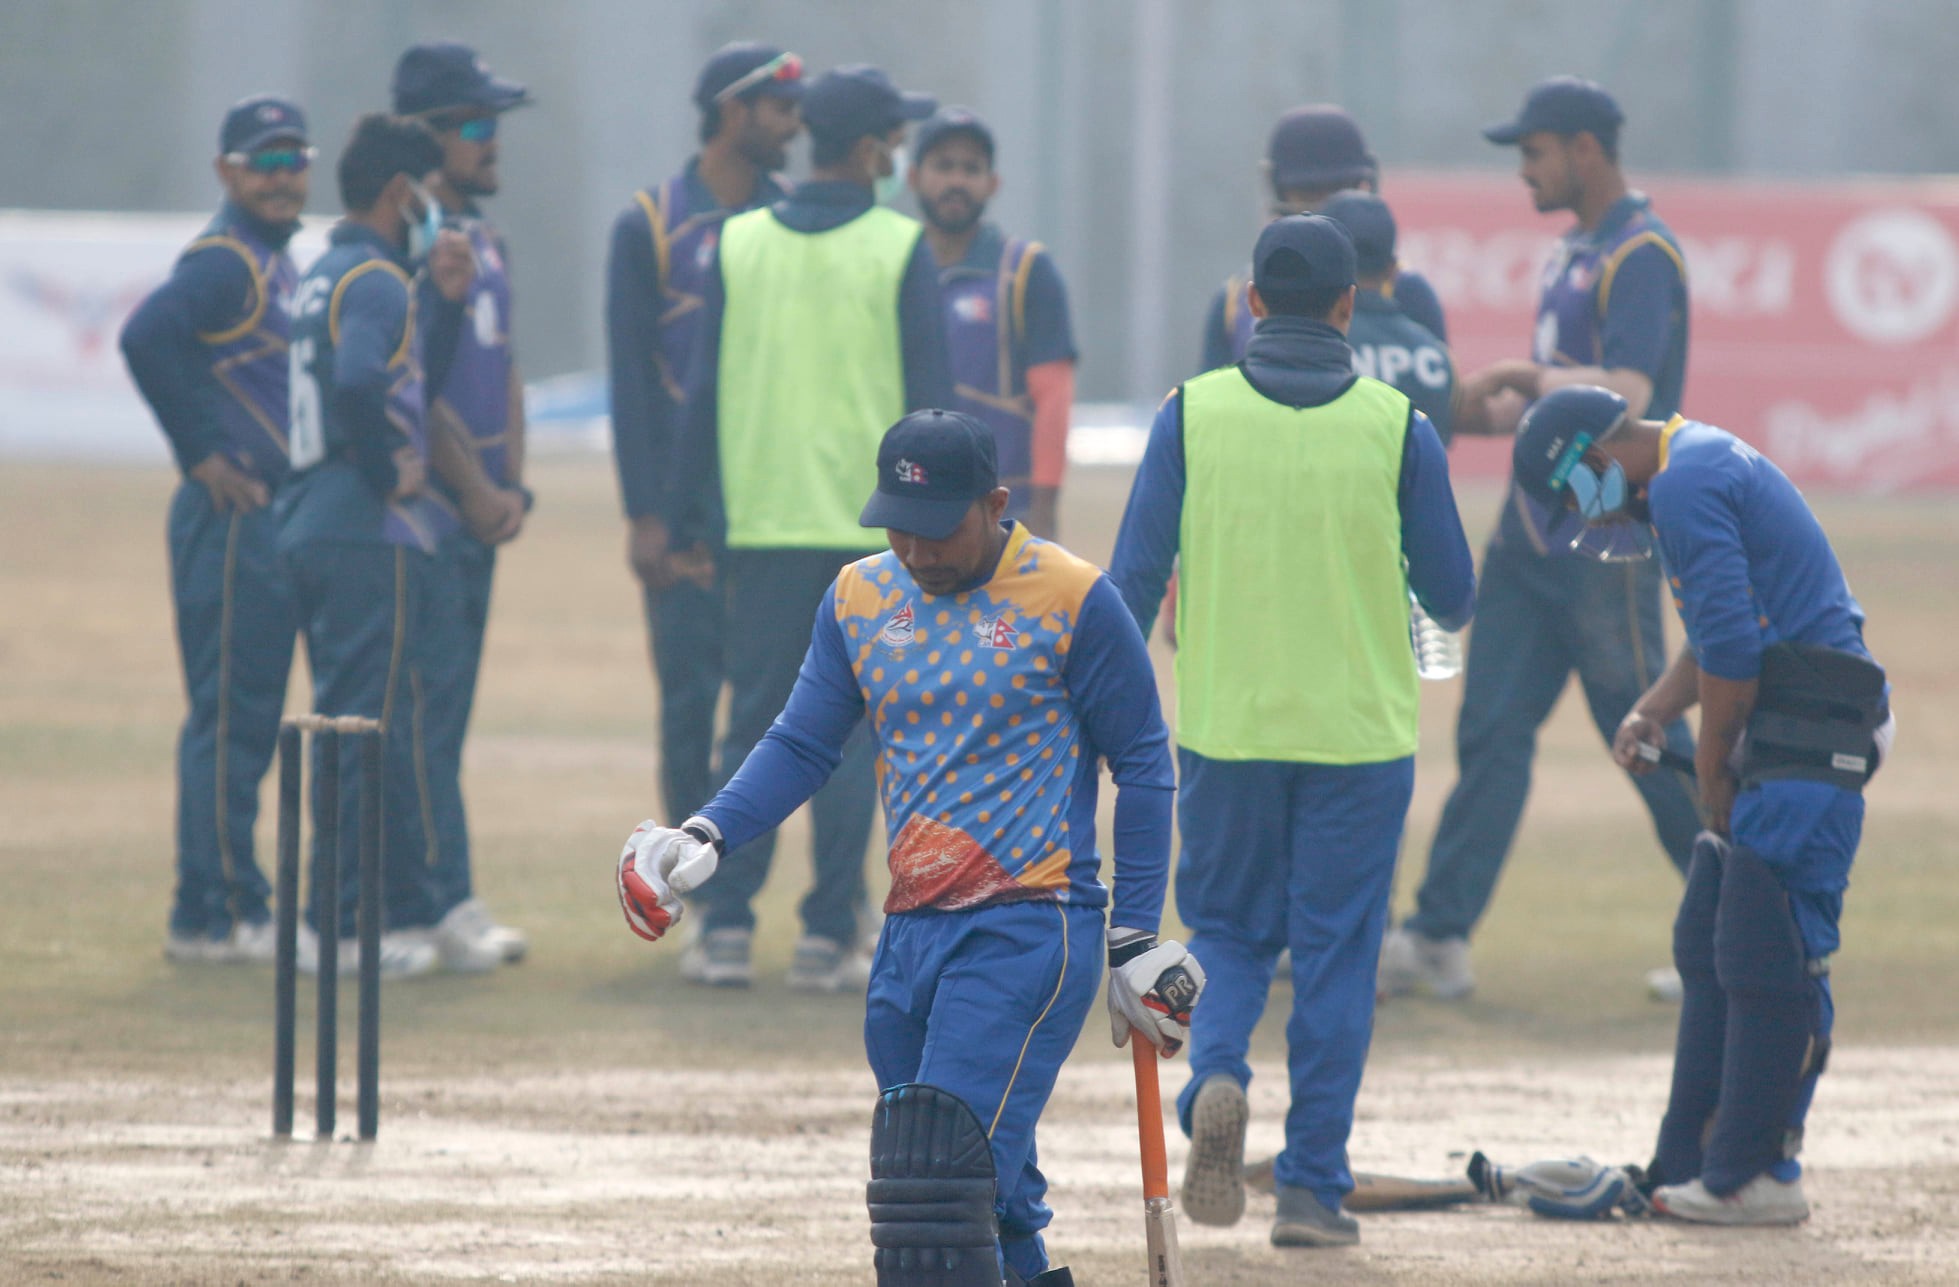 प्रधान मन्त्री कप क्रिकेट : पुलिस क्लबको लगातार चाैथो जित